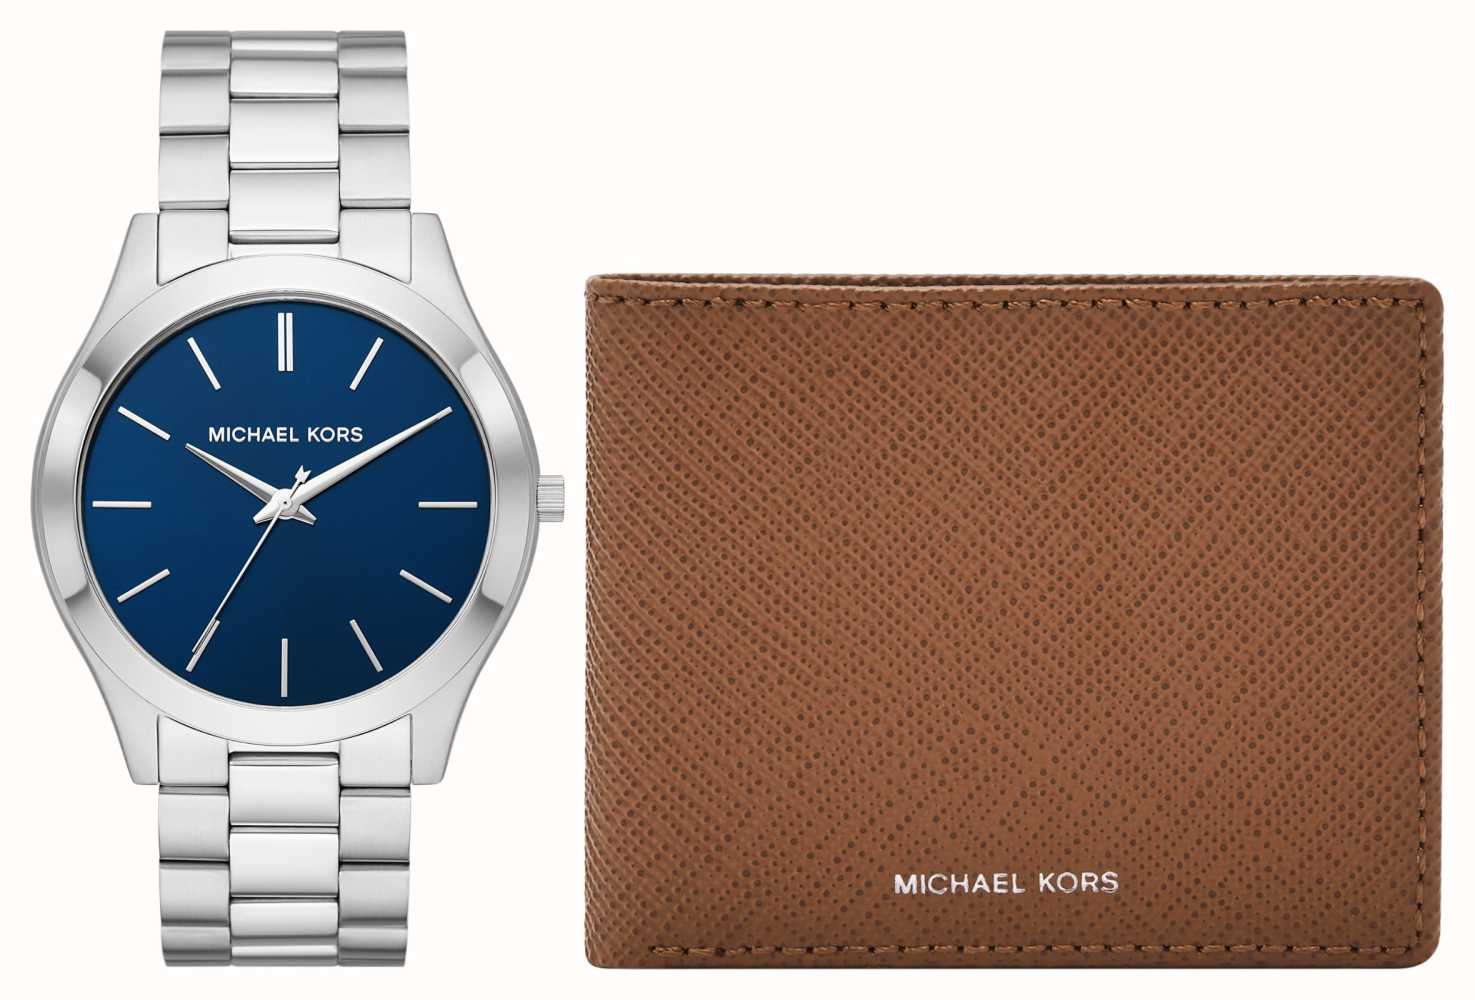 Michael Kors Slim Runway Blue Dial Steel Watch Matching Wallet MK1060SET -  First Class Watches™ HKG